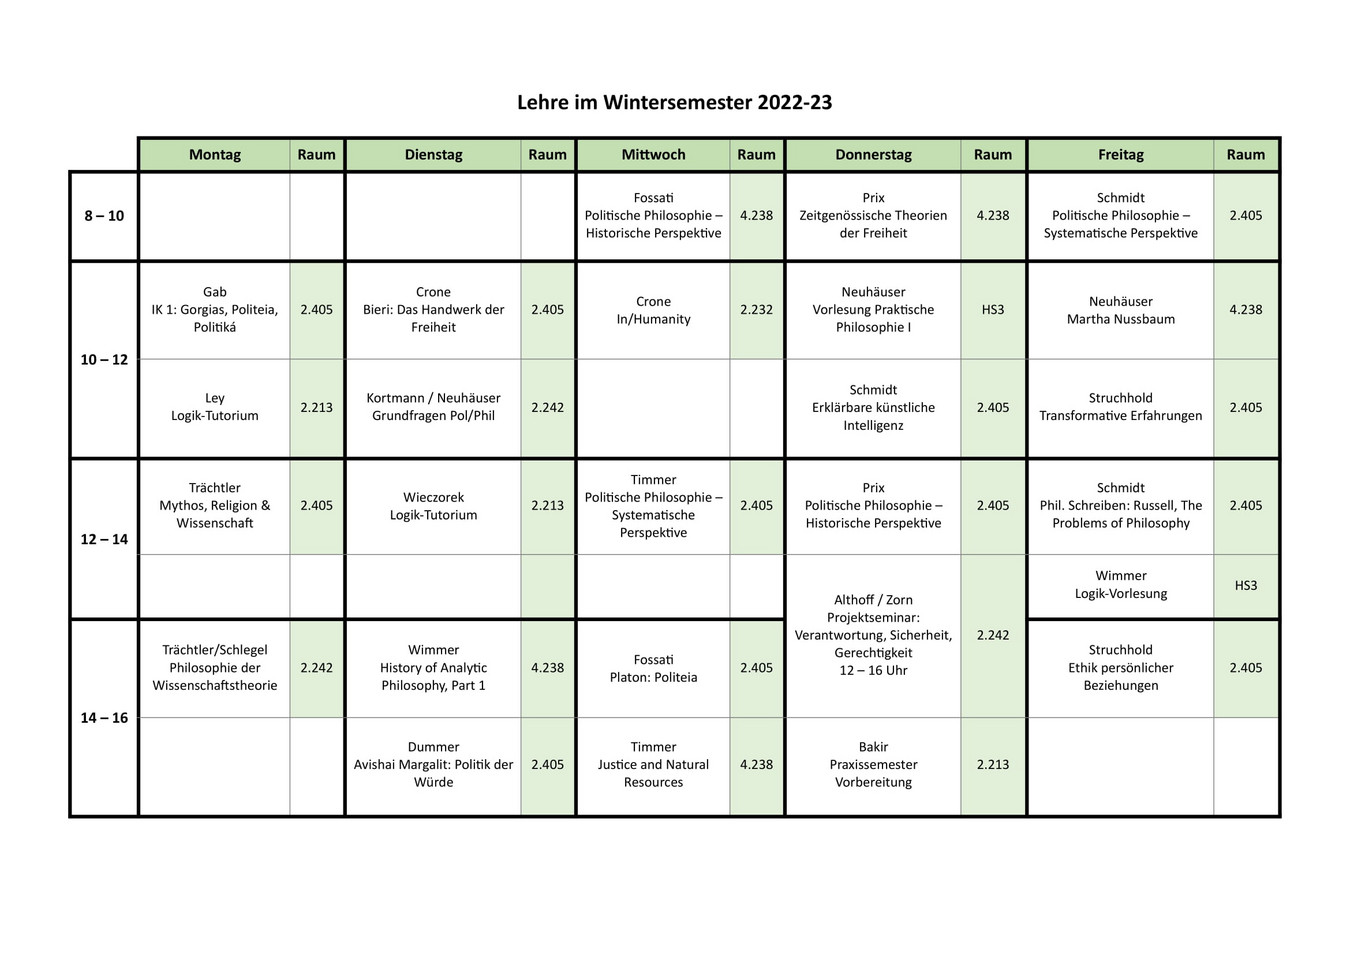 Der Wochenplan der Lehrveranstaltungen der Philosophie im Wintersemester 2022/23